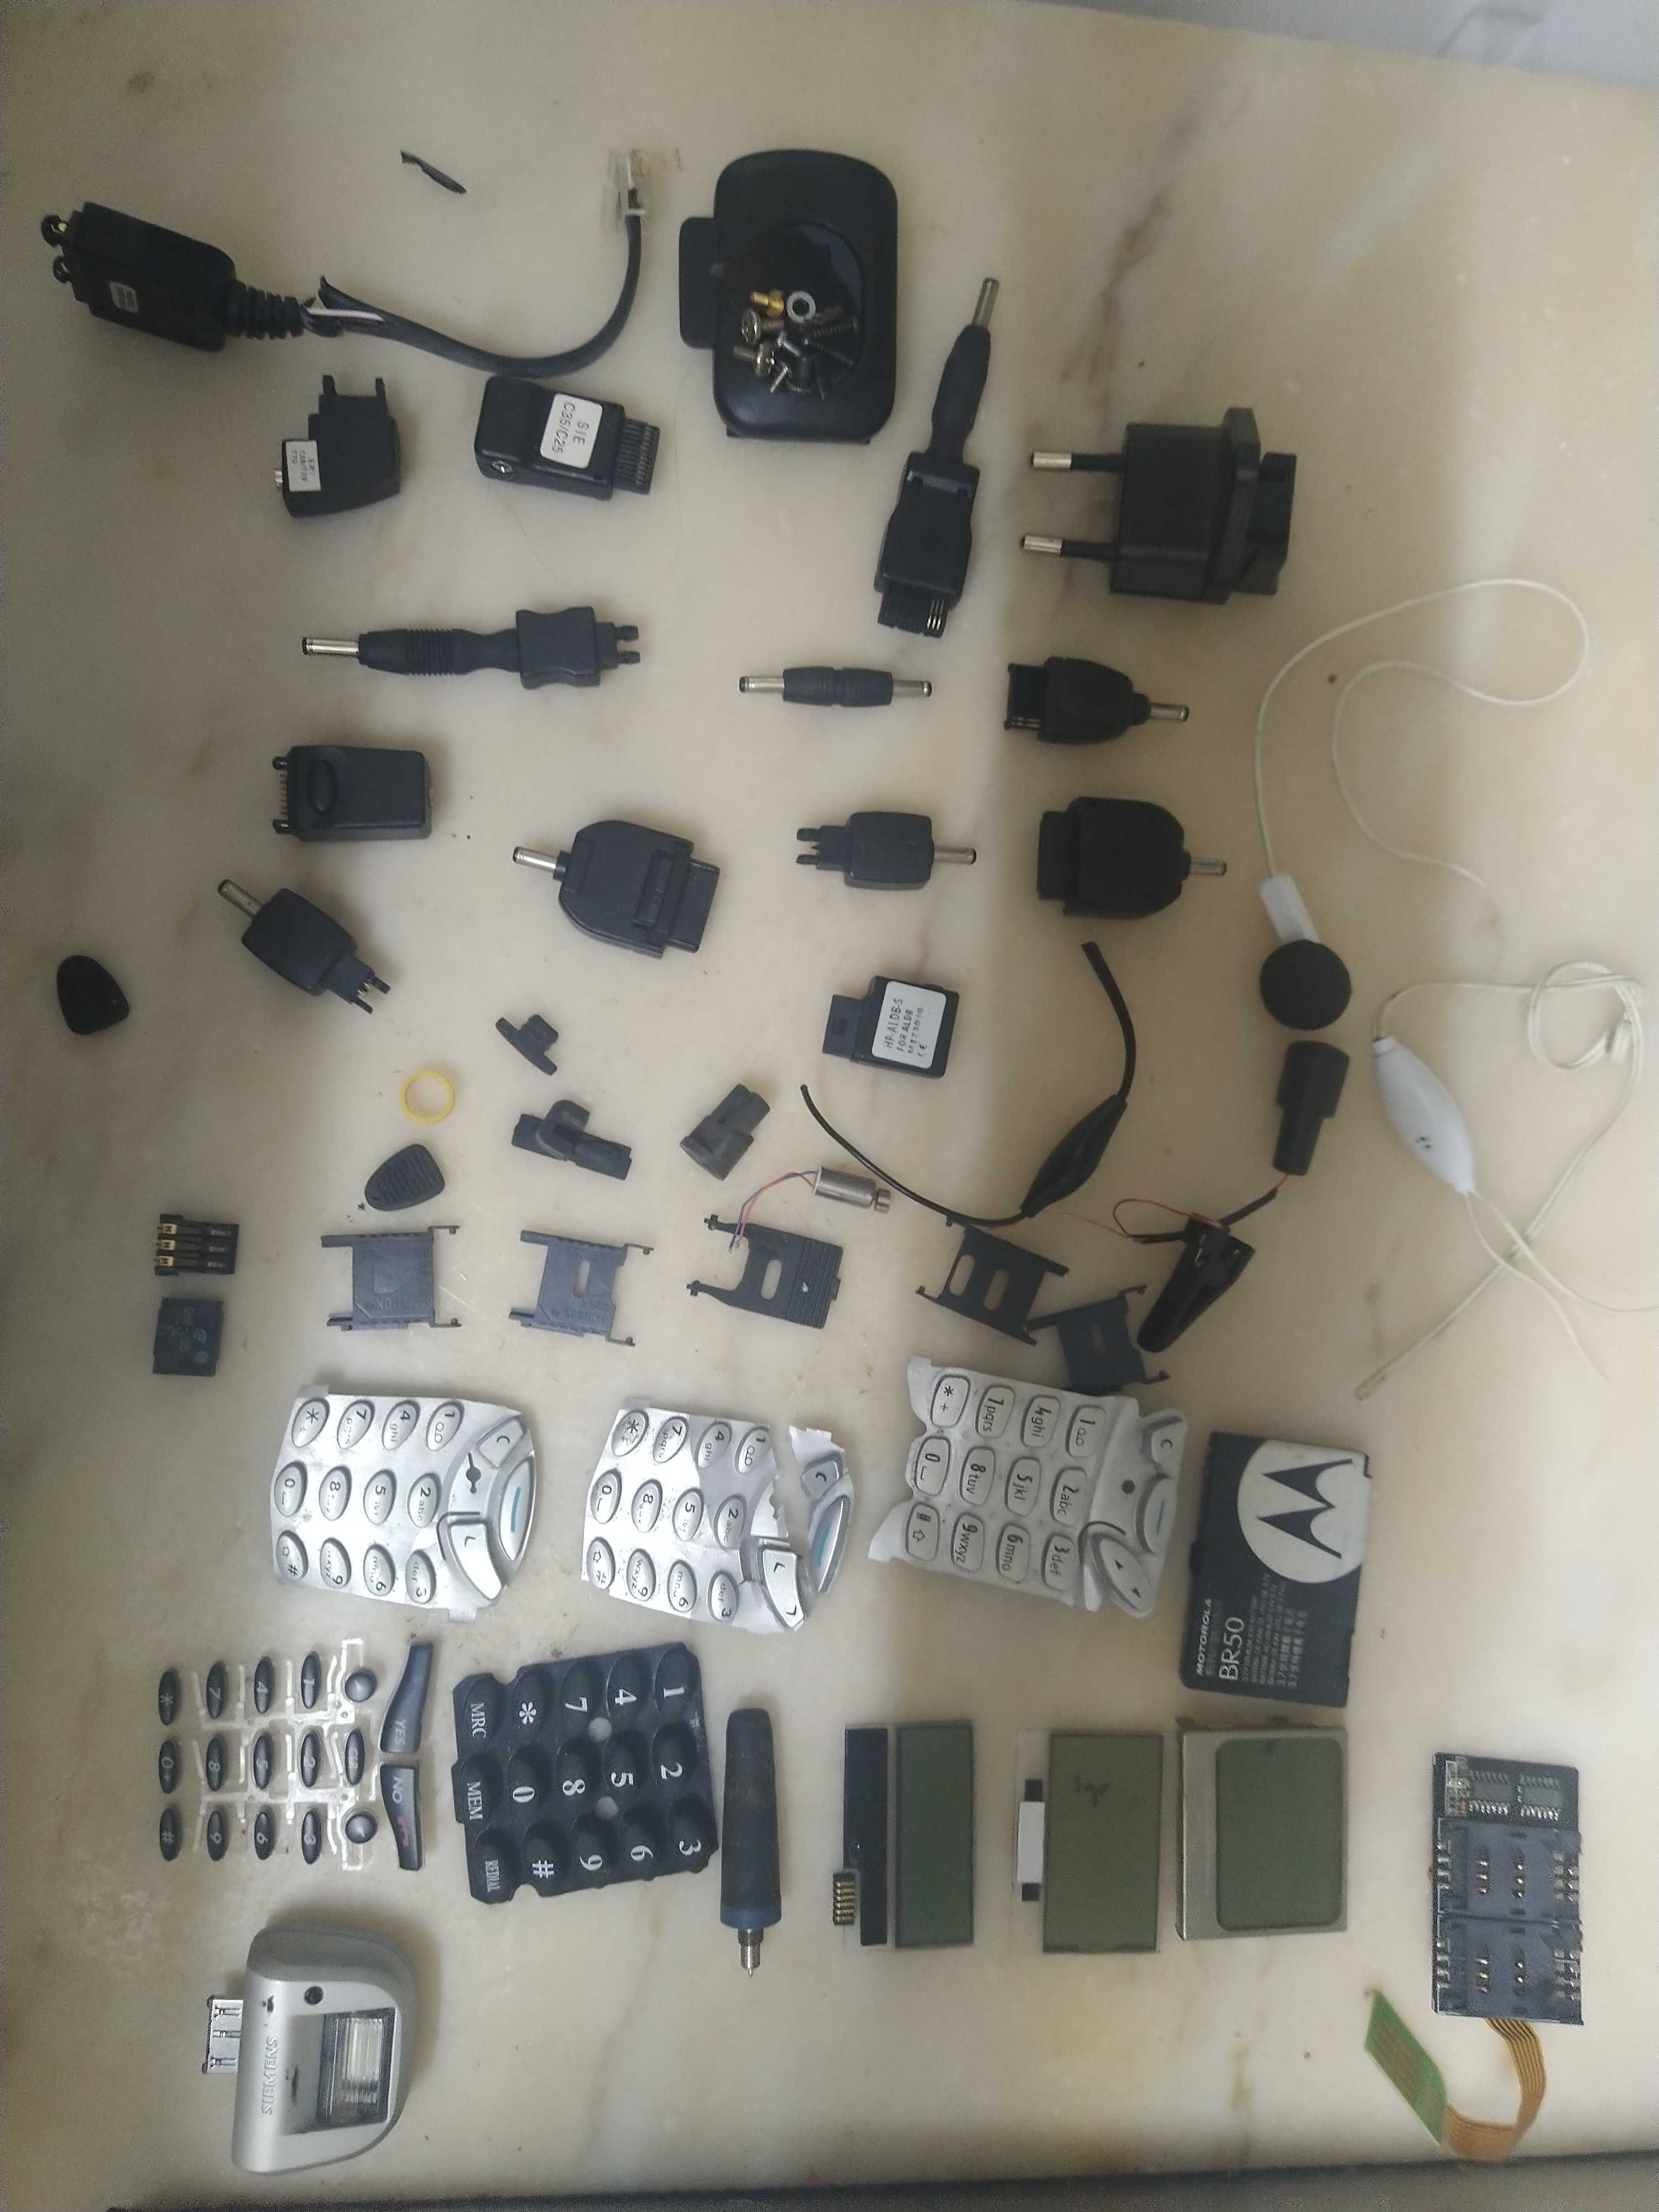 Carregadores e peças componentes para telemóveis antigos.